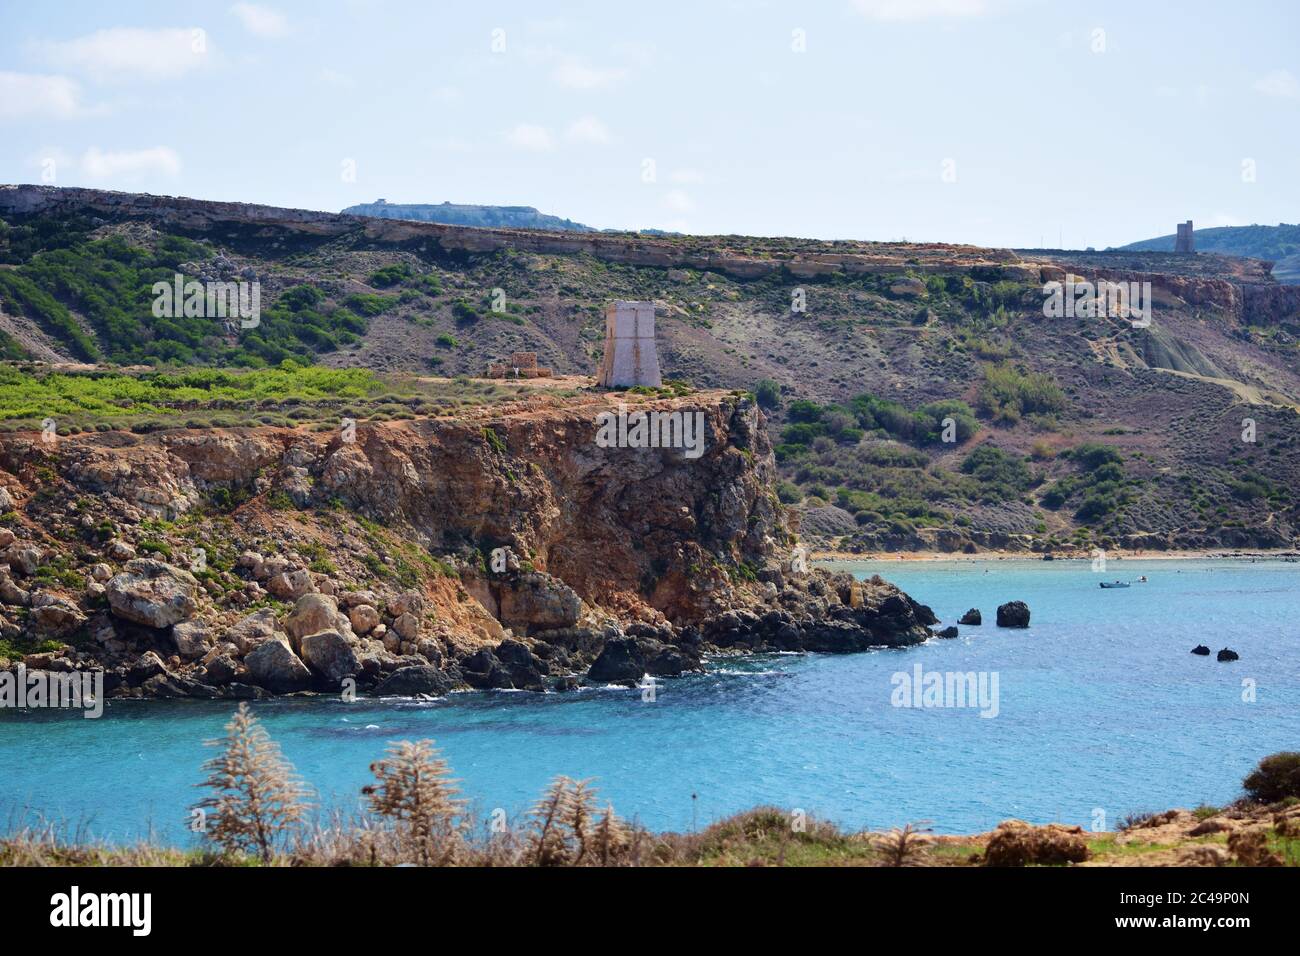 MELLIEHA, MALTA - 12. Okt 2014: Küstenlinie und Klippen von Ghajn Tuffieha und Golden Bay in Malta, zeigt Beweise für die Verwitterung und Erosion der Klippen, cli Stockfoto